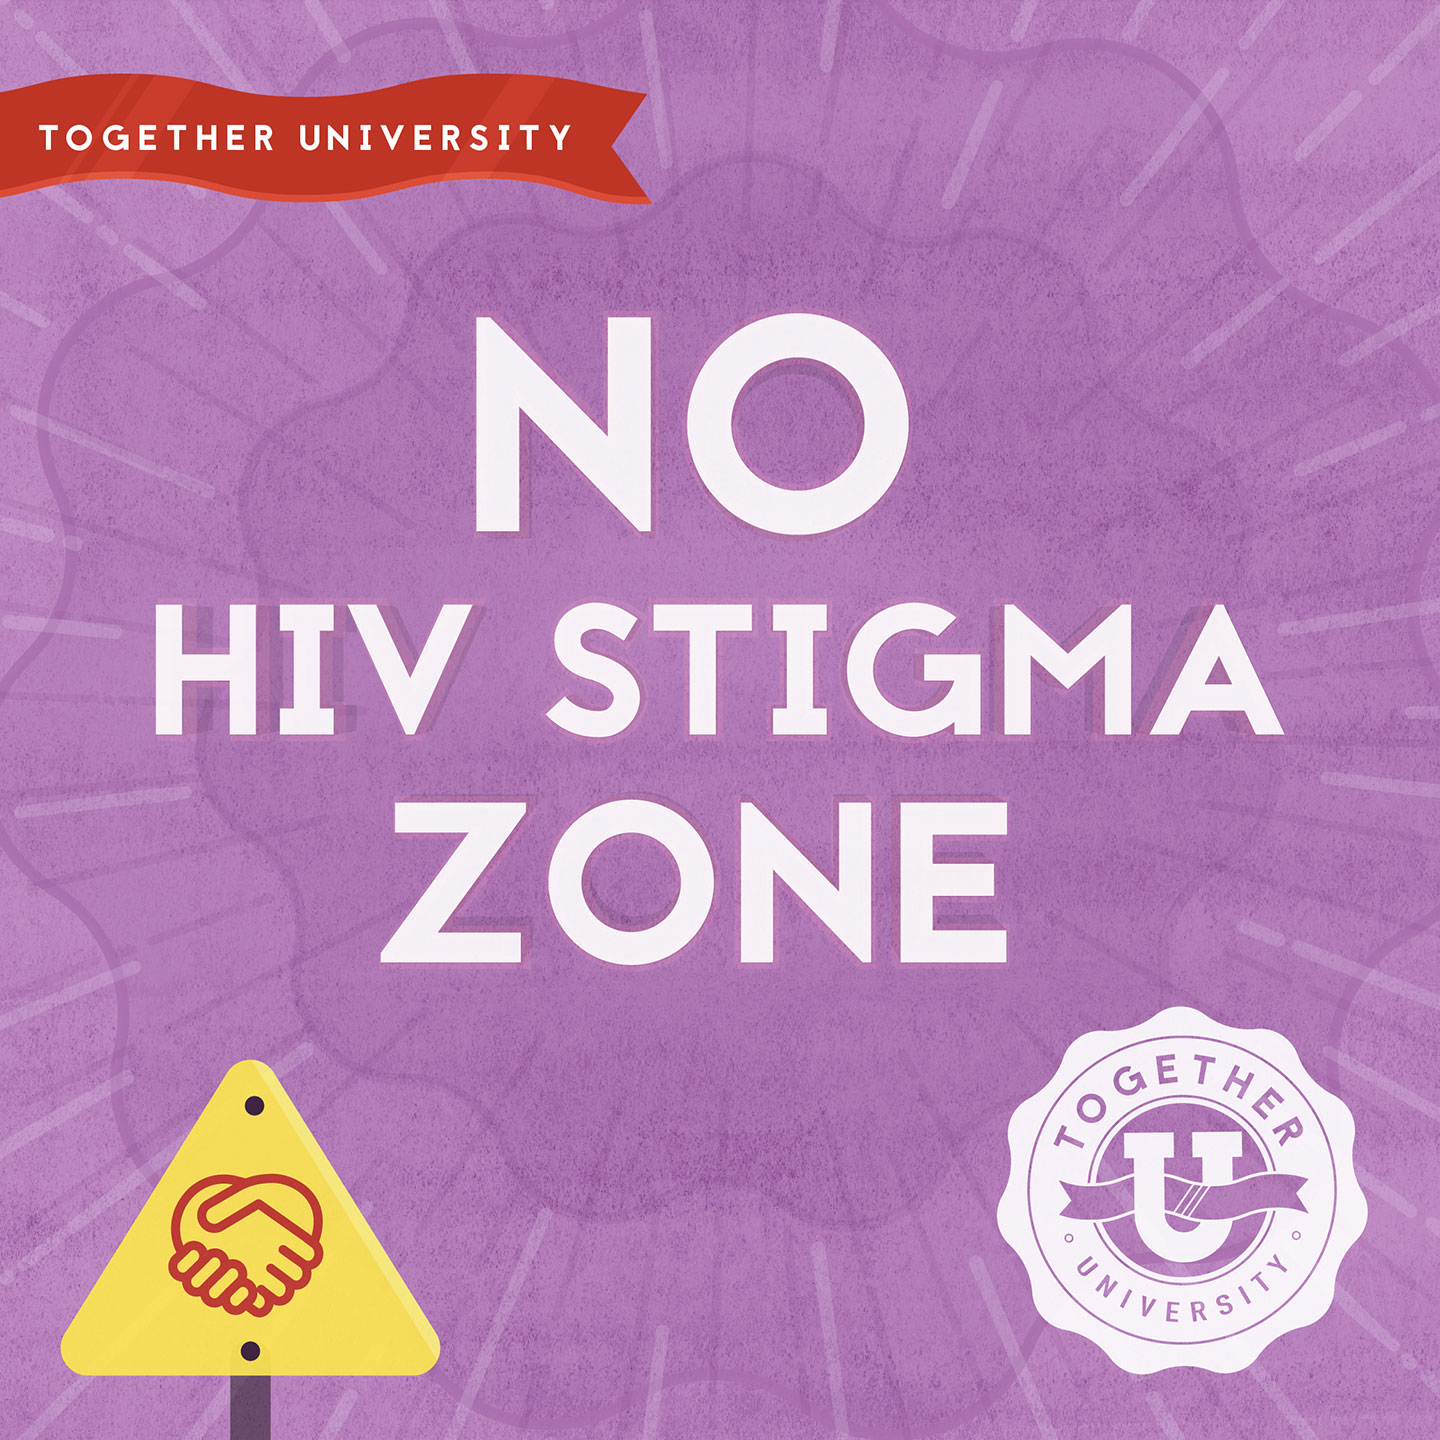 Together U logo with text: No HIV stigma zone